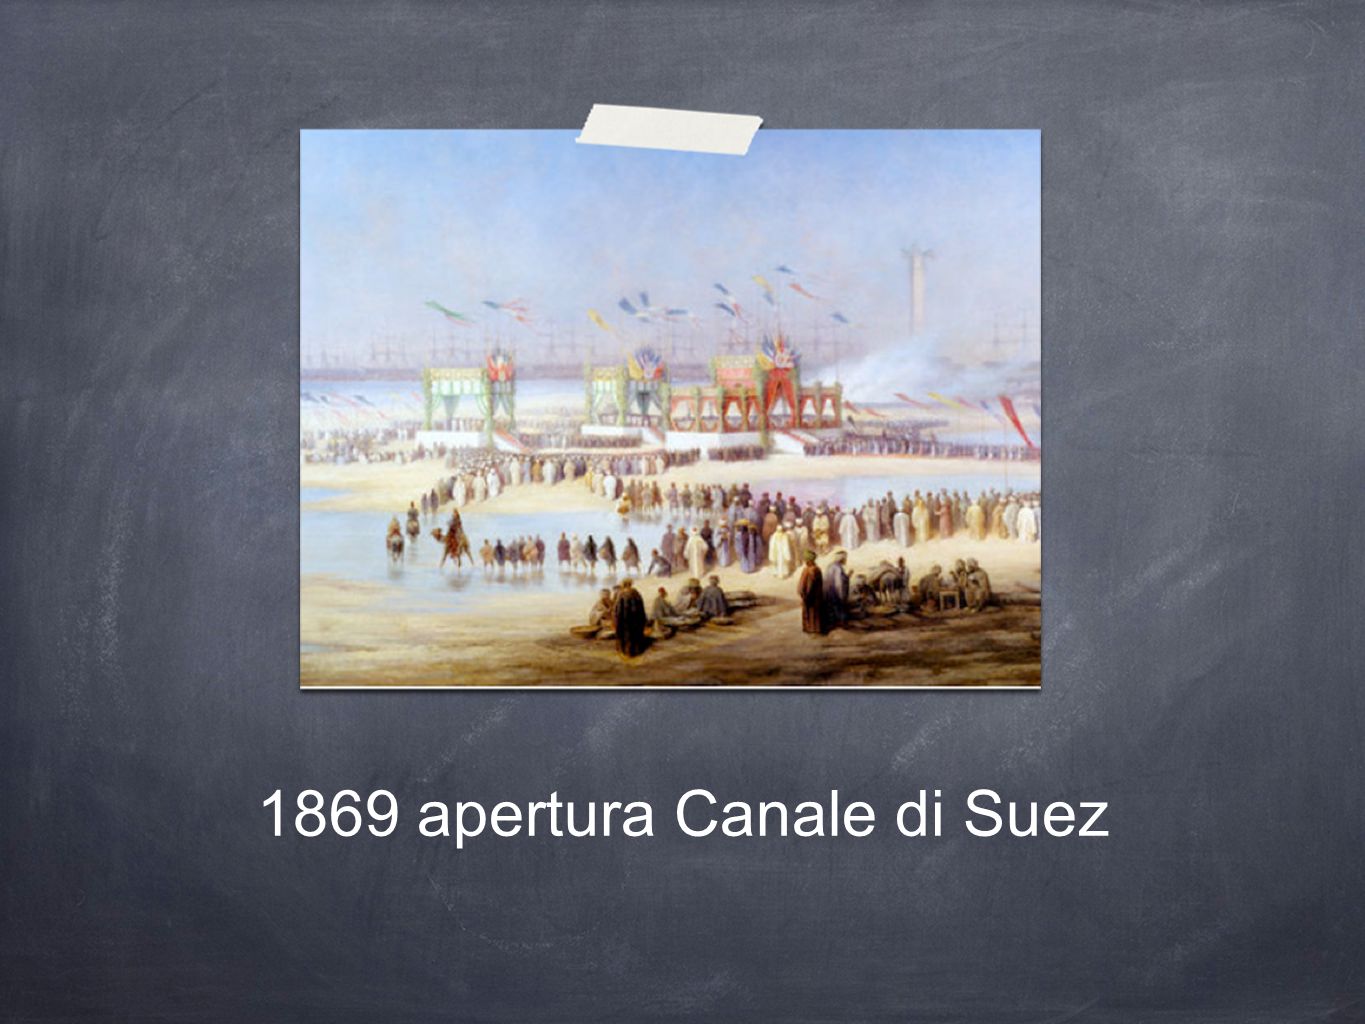 1869 apertura Canale di Suez